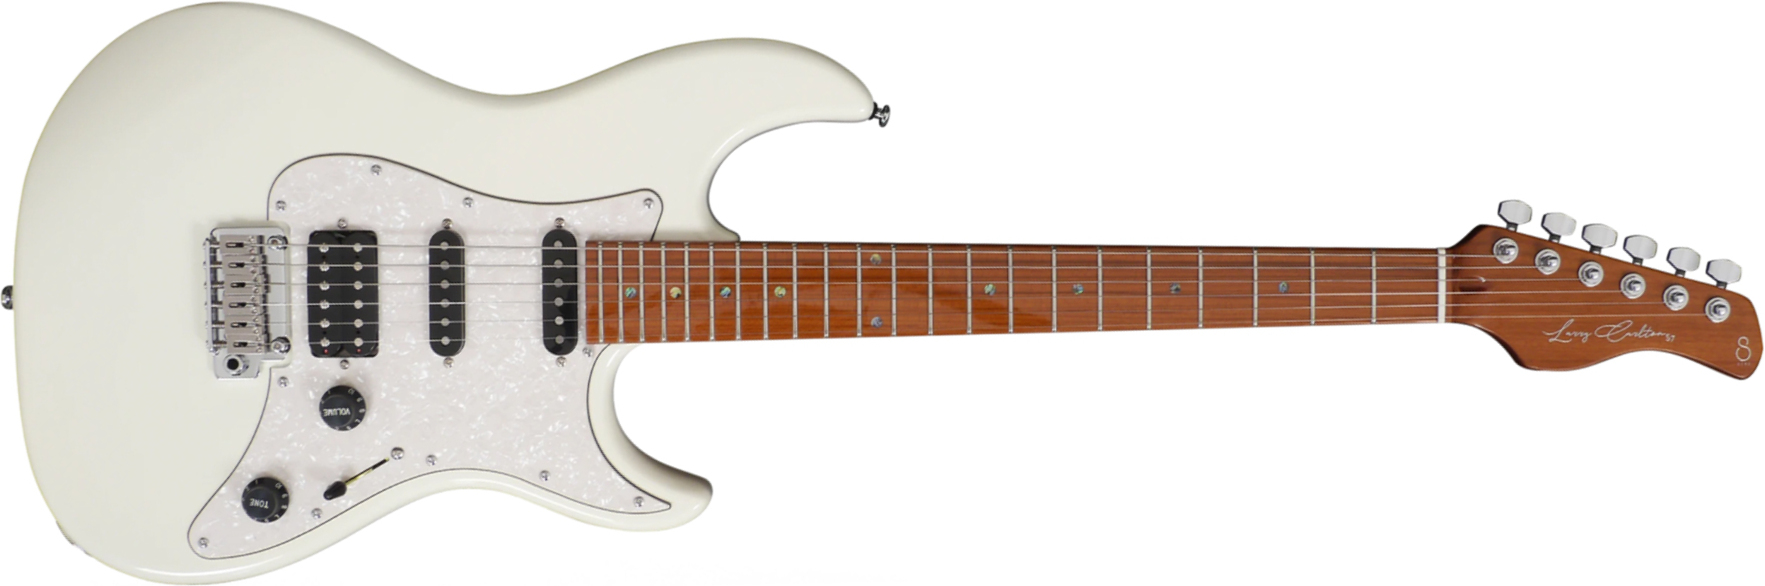 Sire Larry Carlton S7 Signature Hss Trem Mn - Antique White - Elektrische gitaar in Str-vorm - Main picture